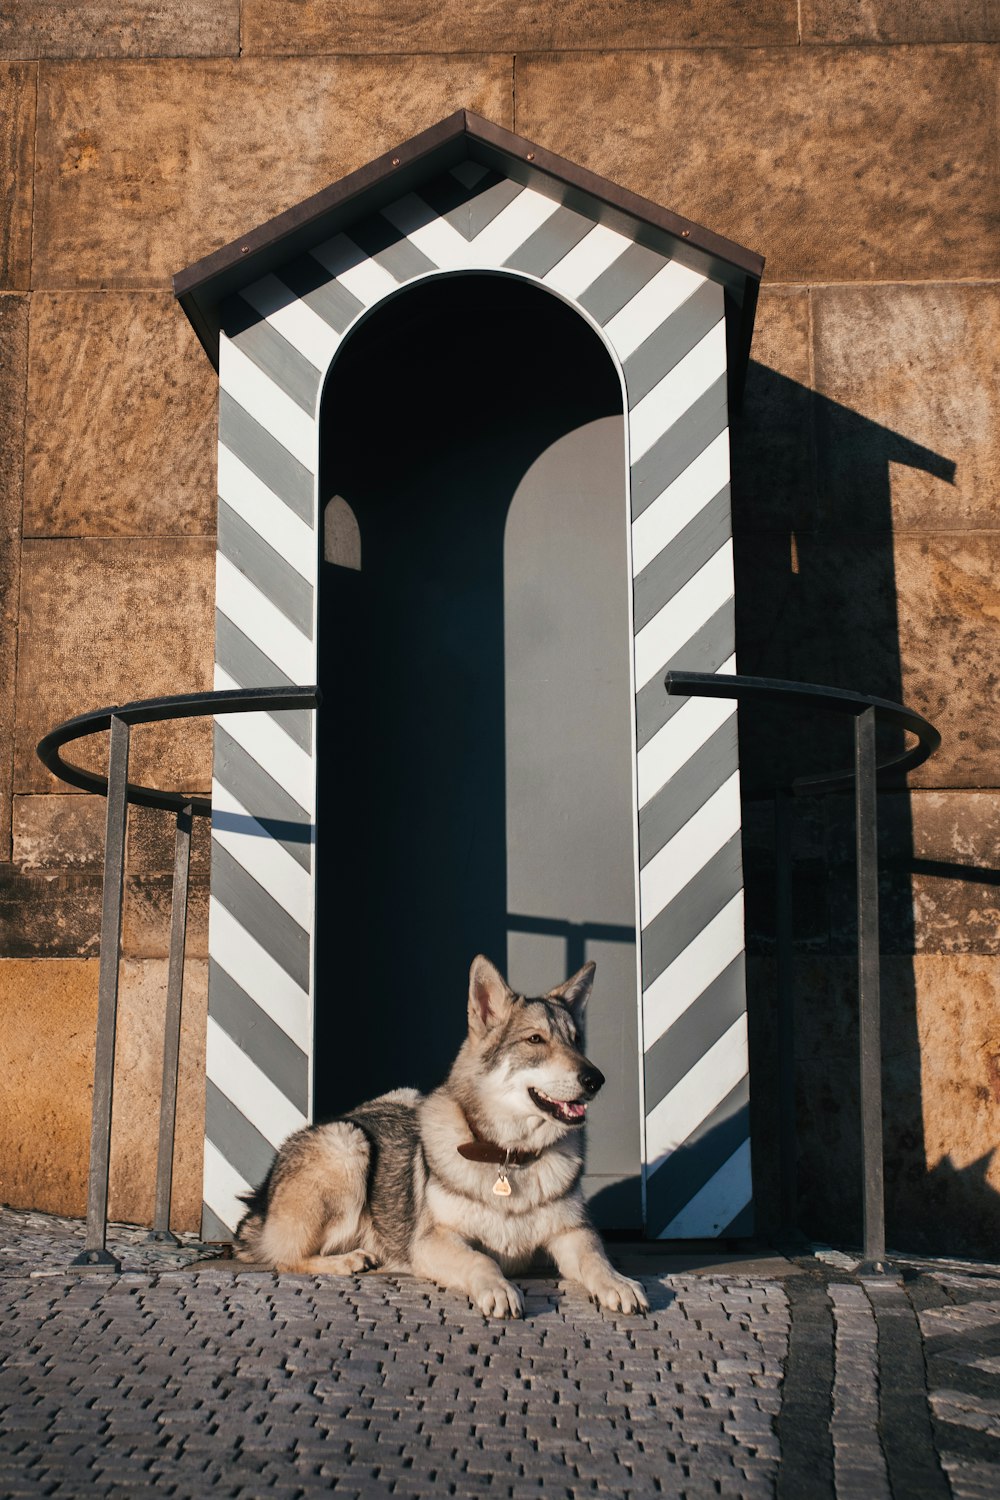 a dog sitting on a brick walkway